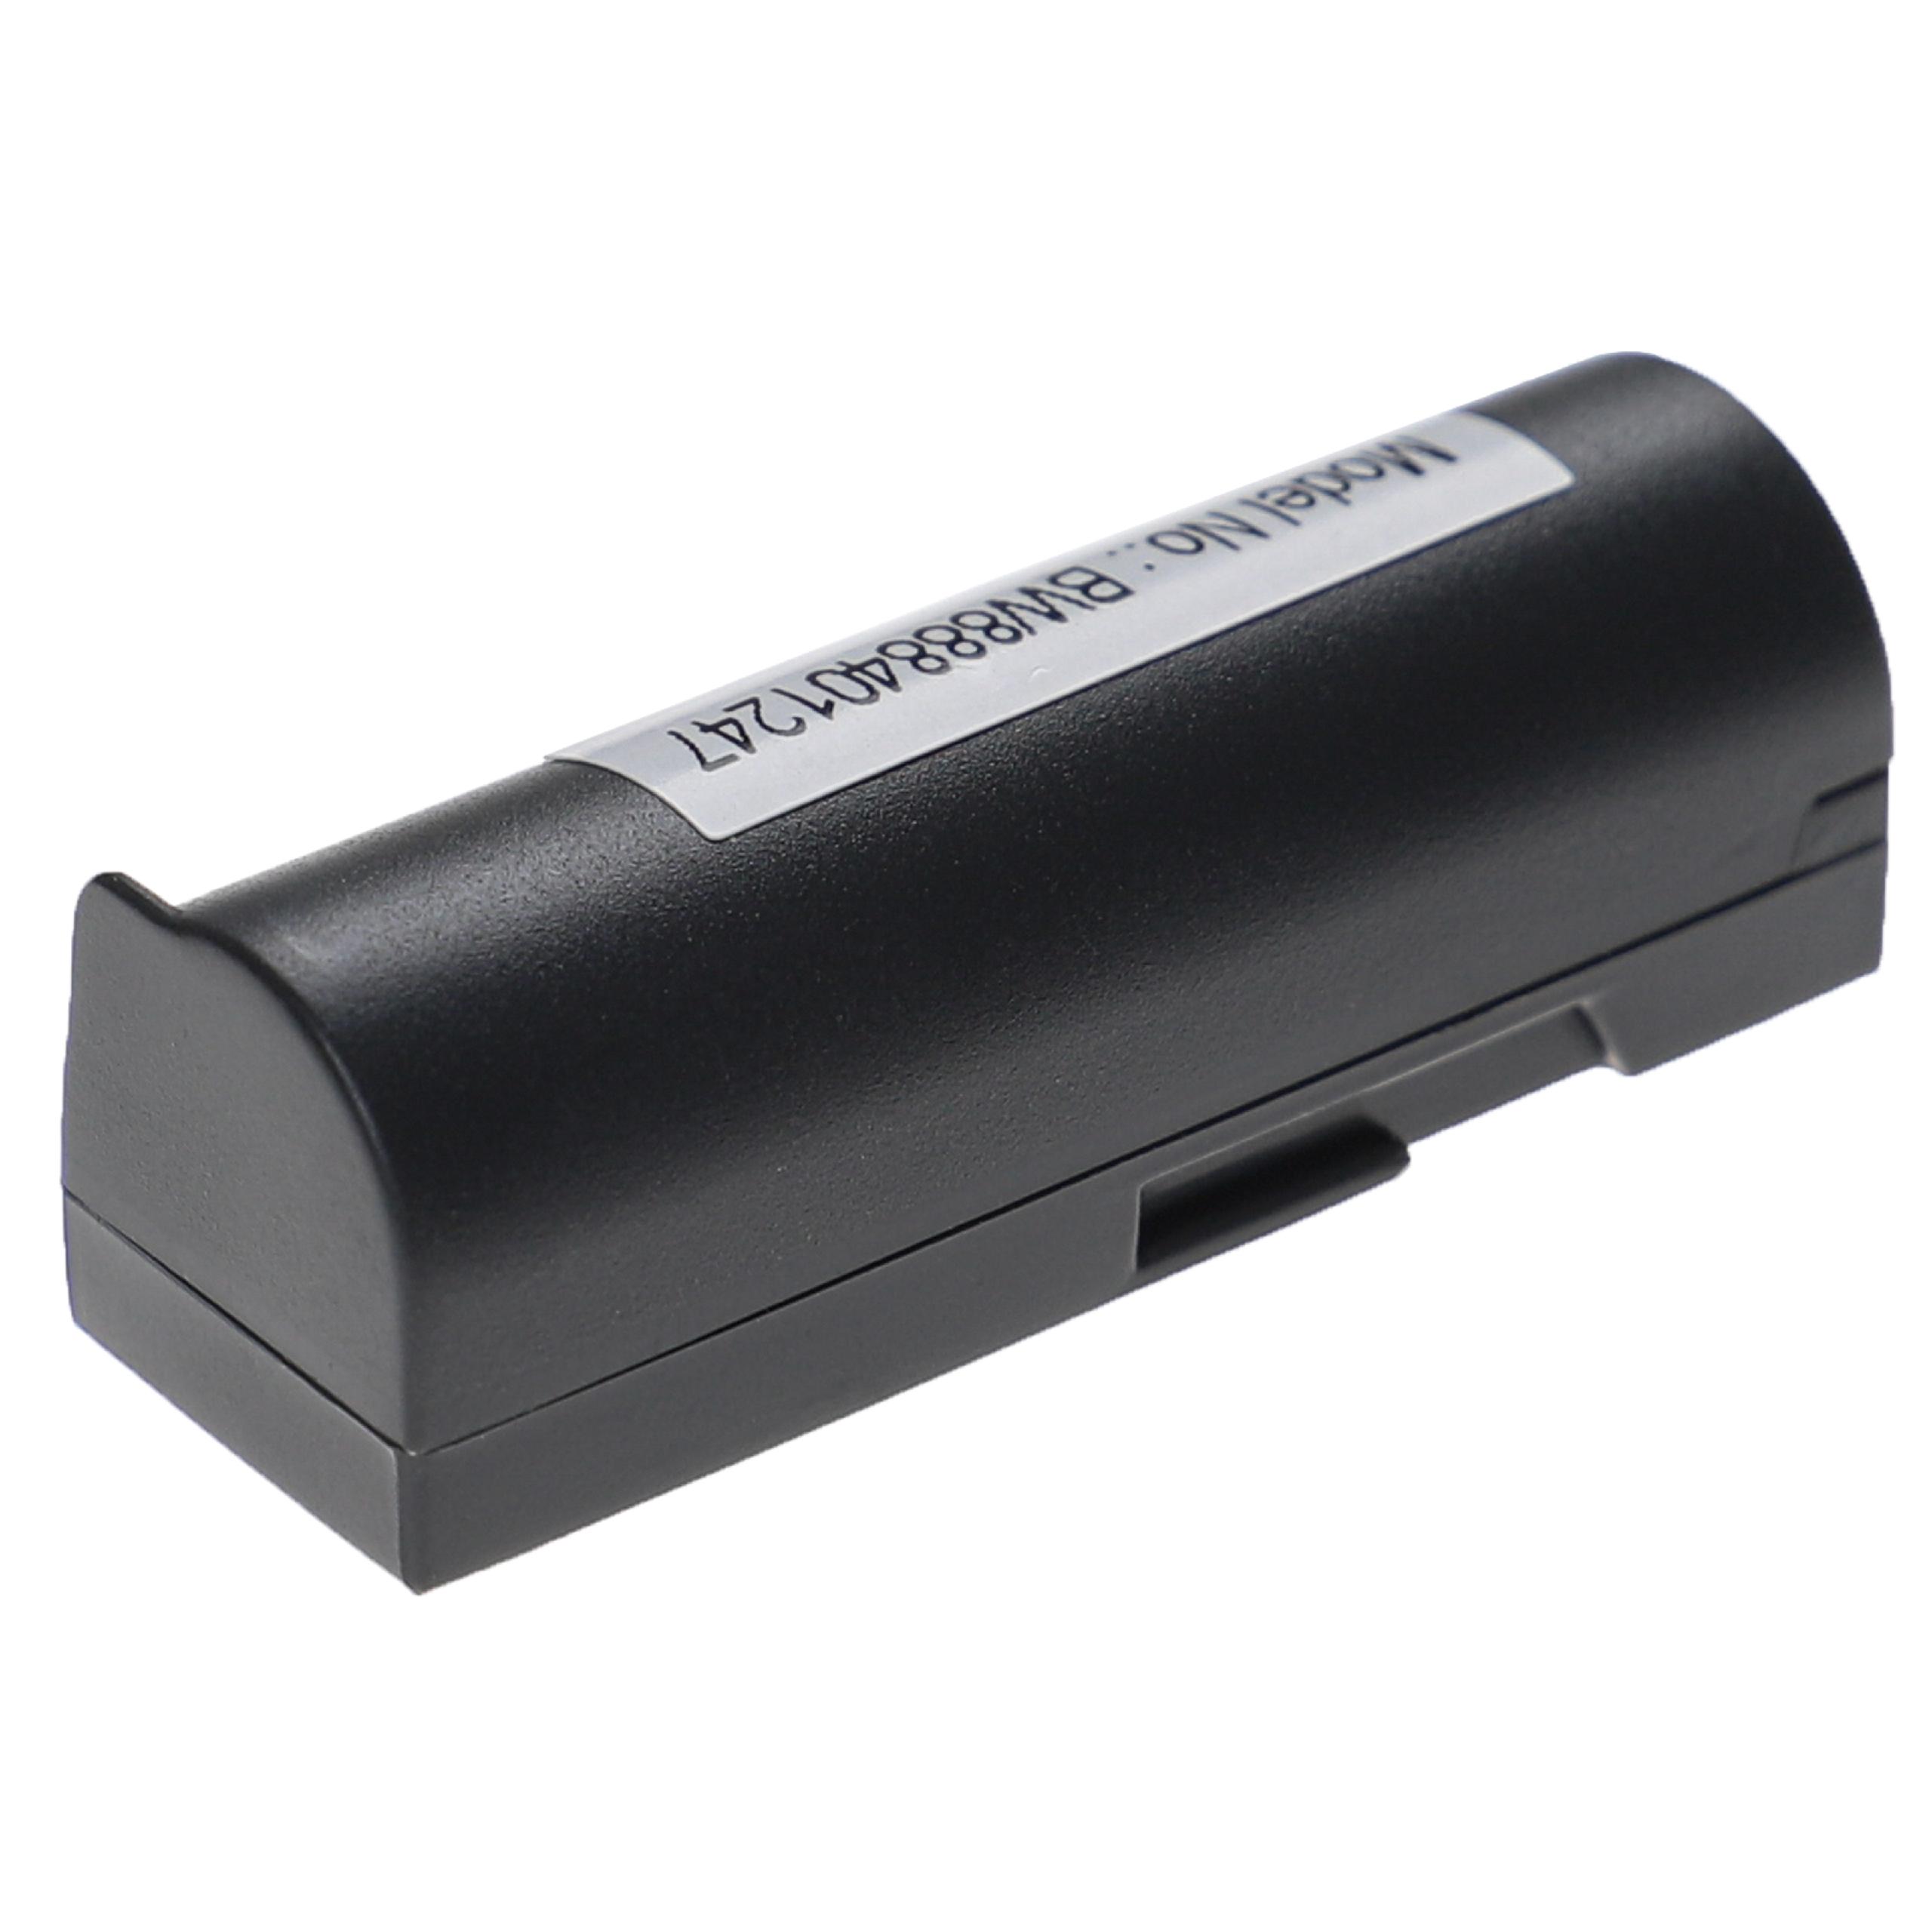 Batteria sostituisce Konica Minolta NP-700 per fotocamera Konica Minolta - 700mAh 3,7V Li-Ion